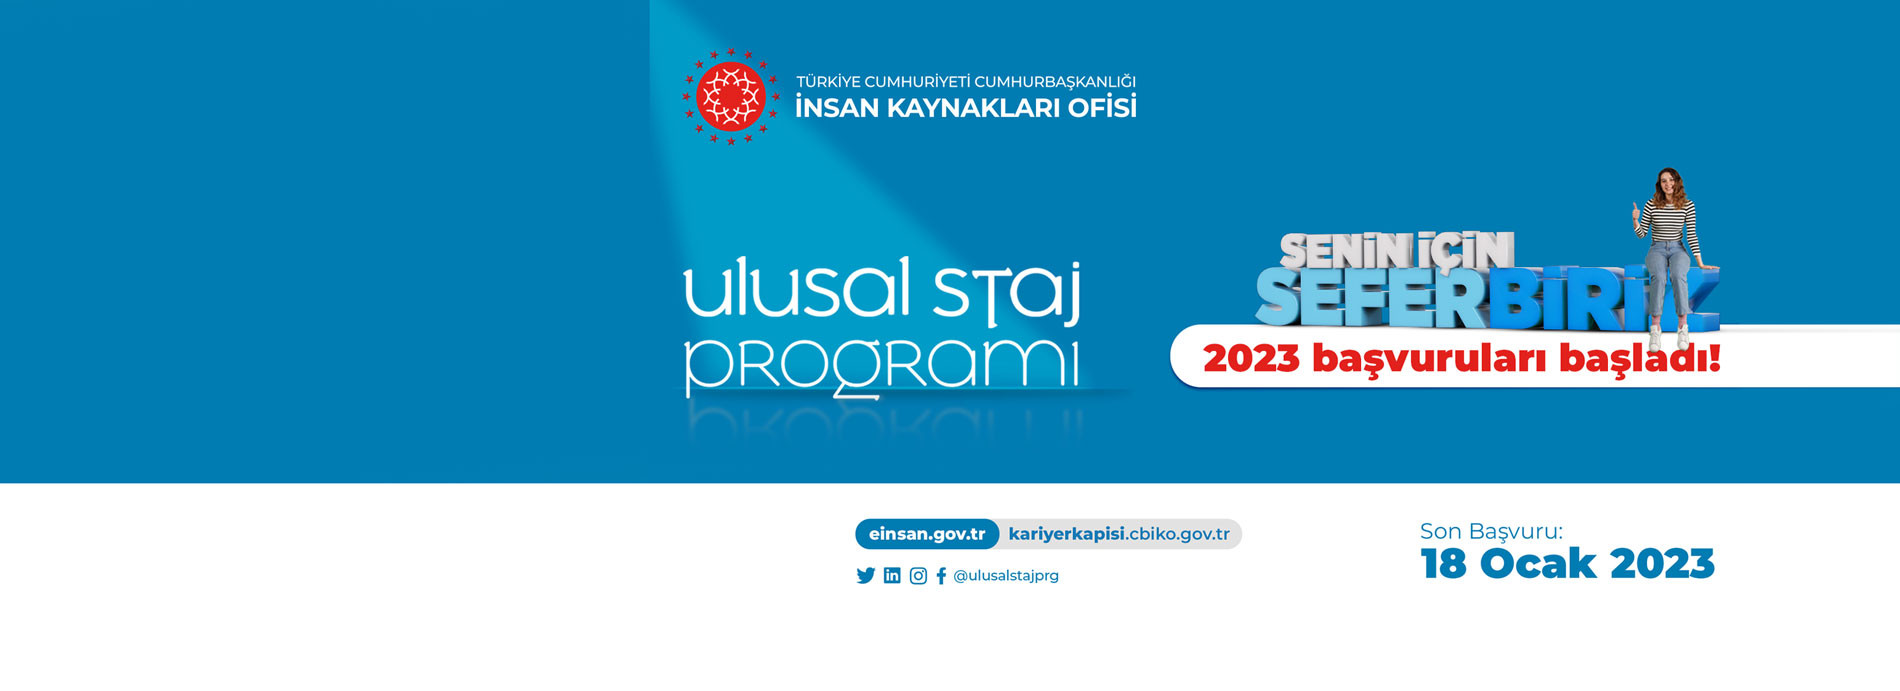 Ulusal Staj Programı 2023